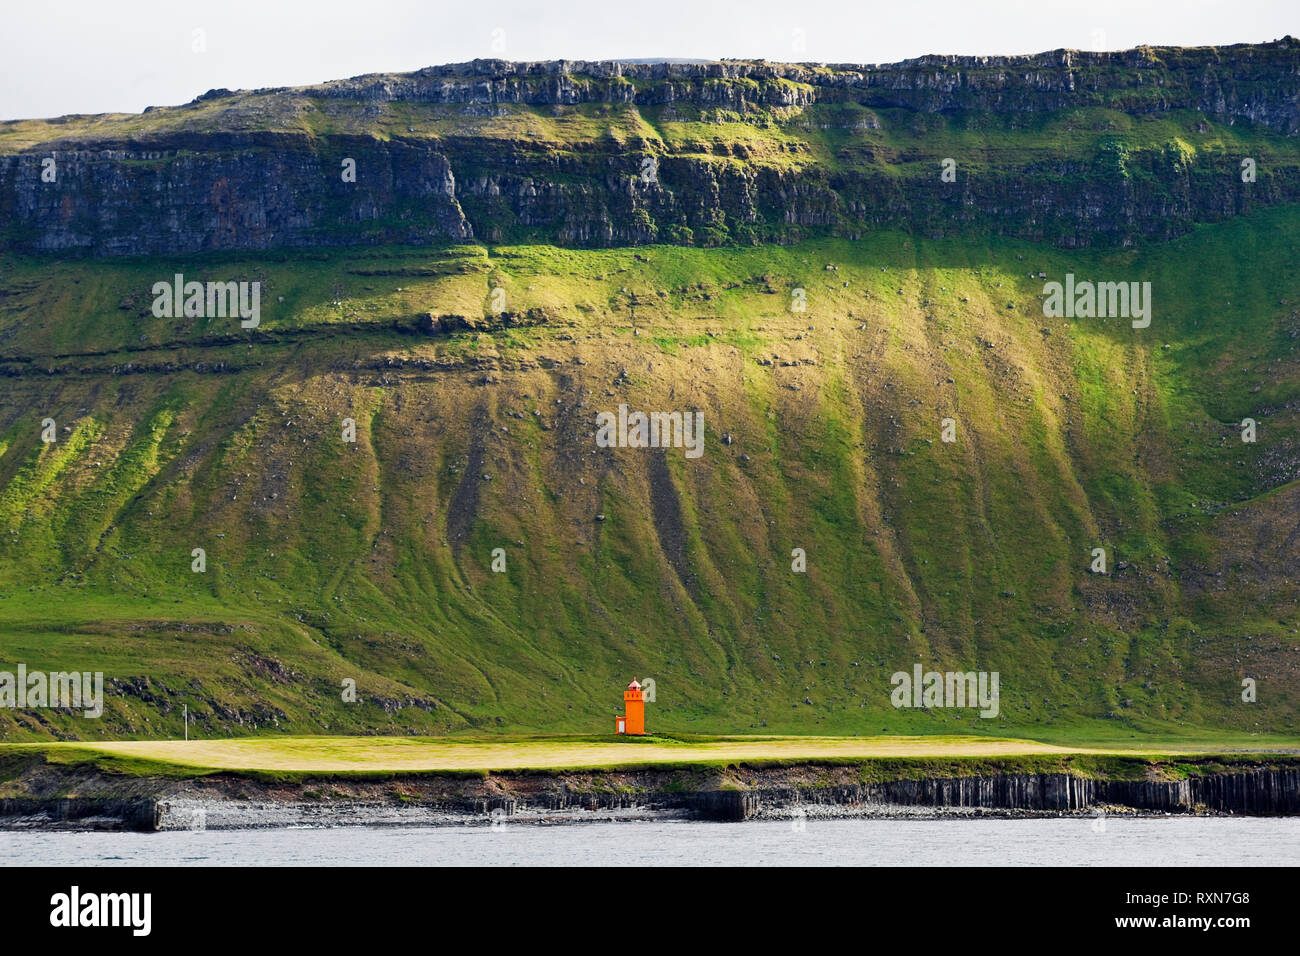 S'élevant au-dessus de montagne escarpée un phare orange au nord-ouest de Grundarfjordur sur la péninsule de Snæfellsnes, l'Islande Banque D'Images